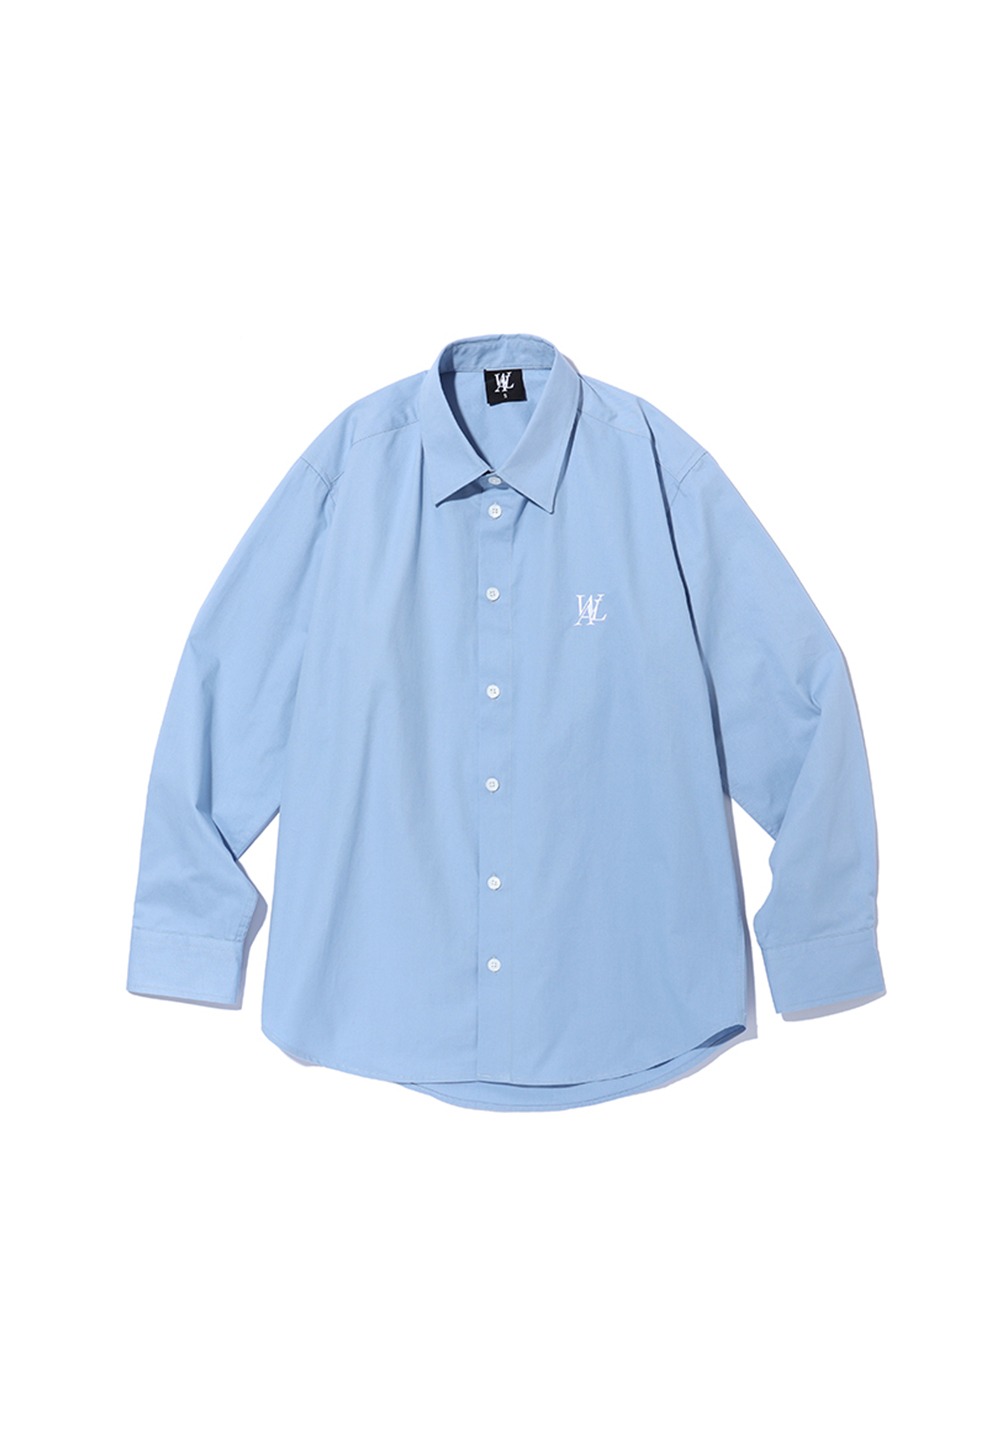 Signature essential shirt - SKY BLUE